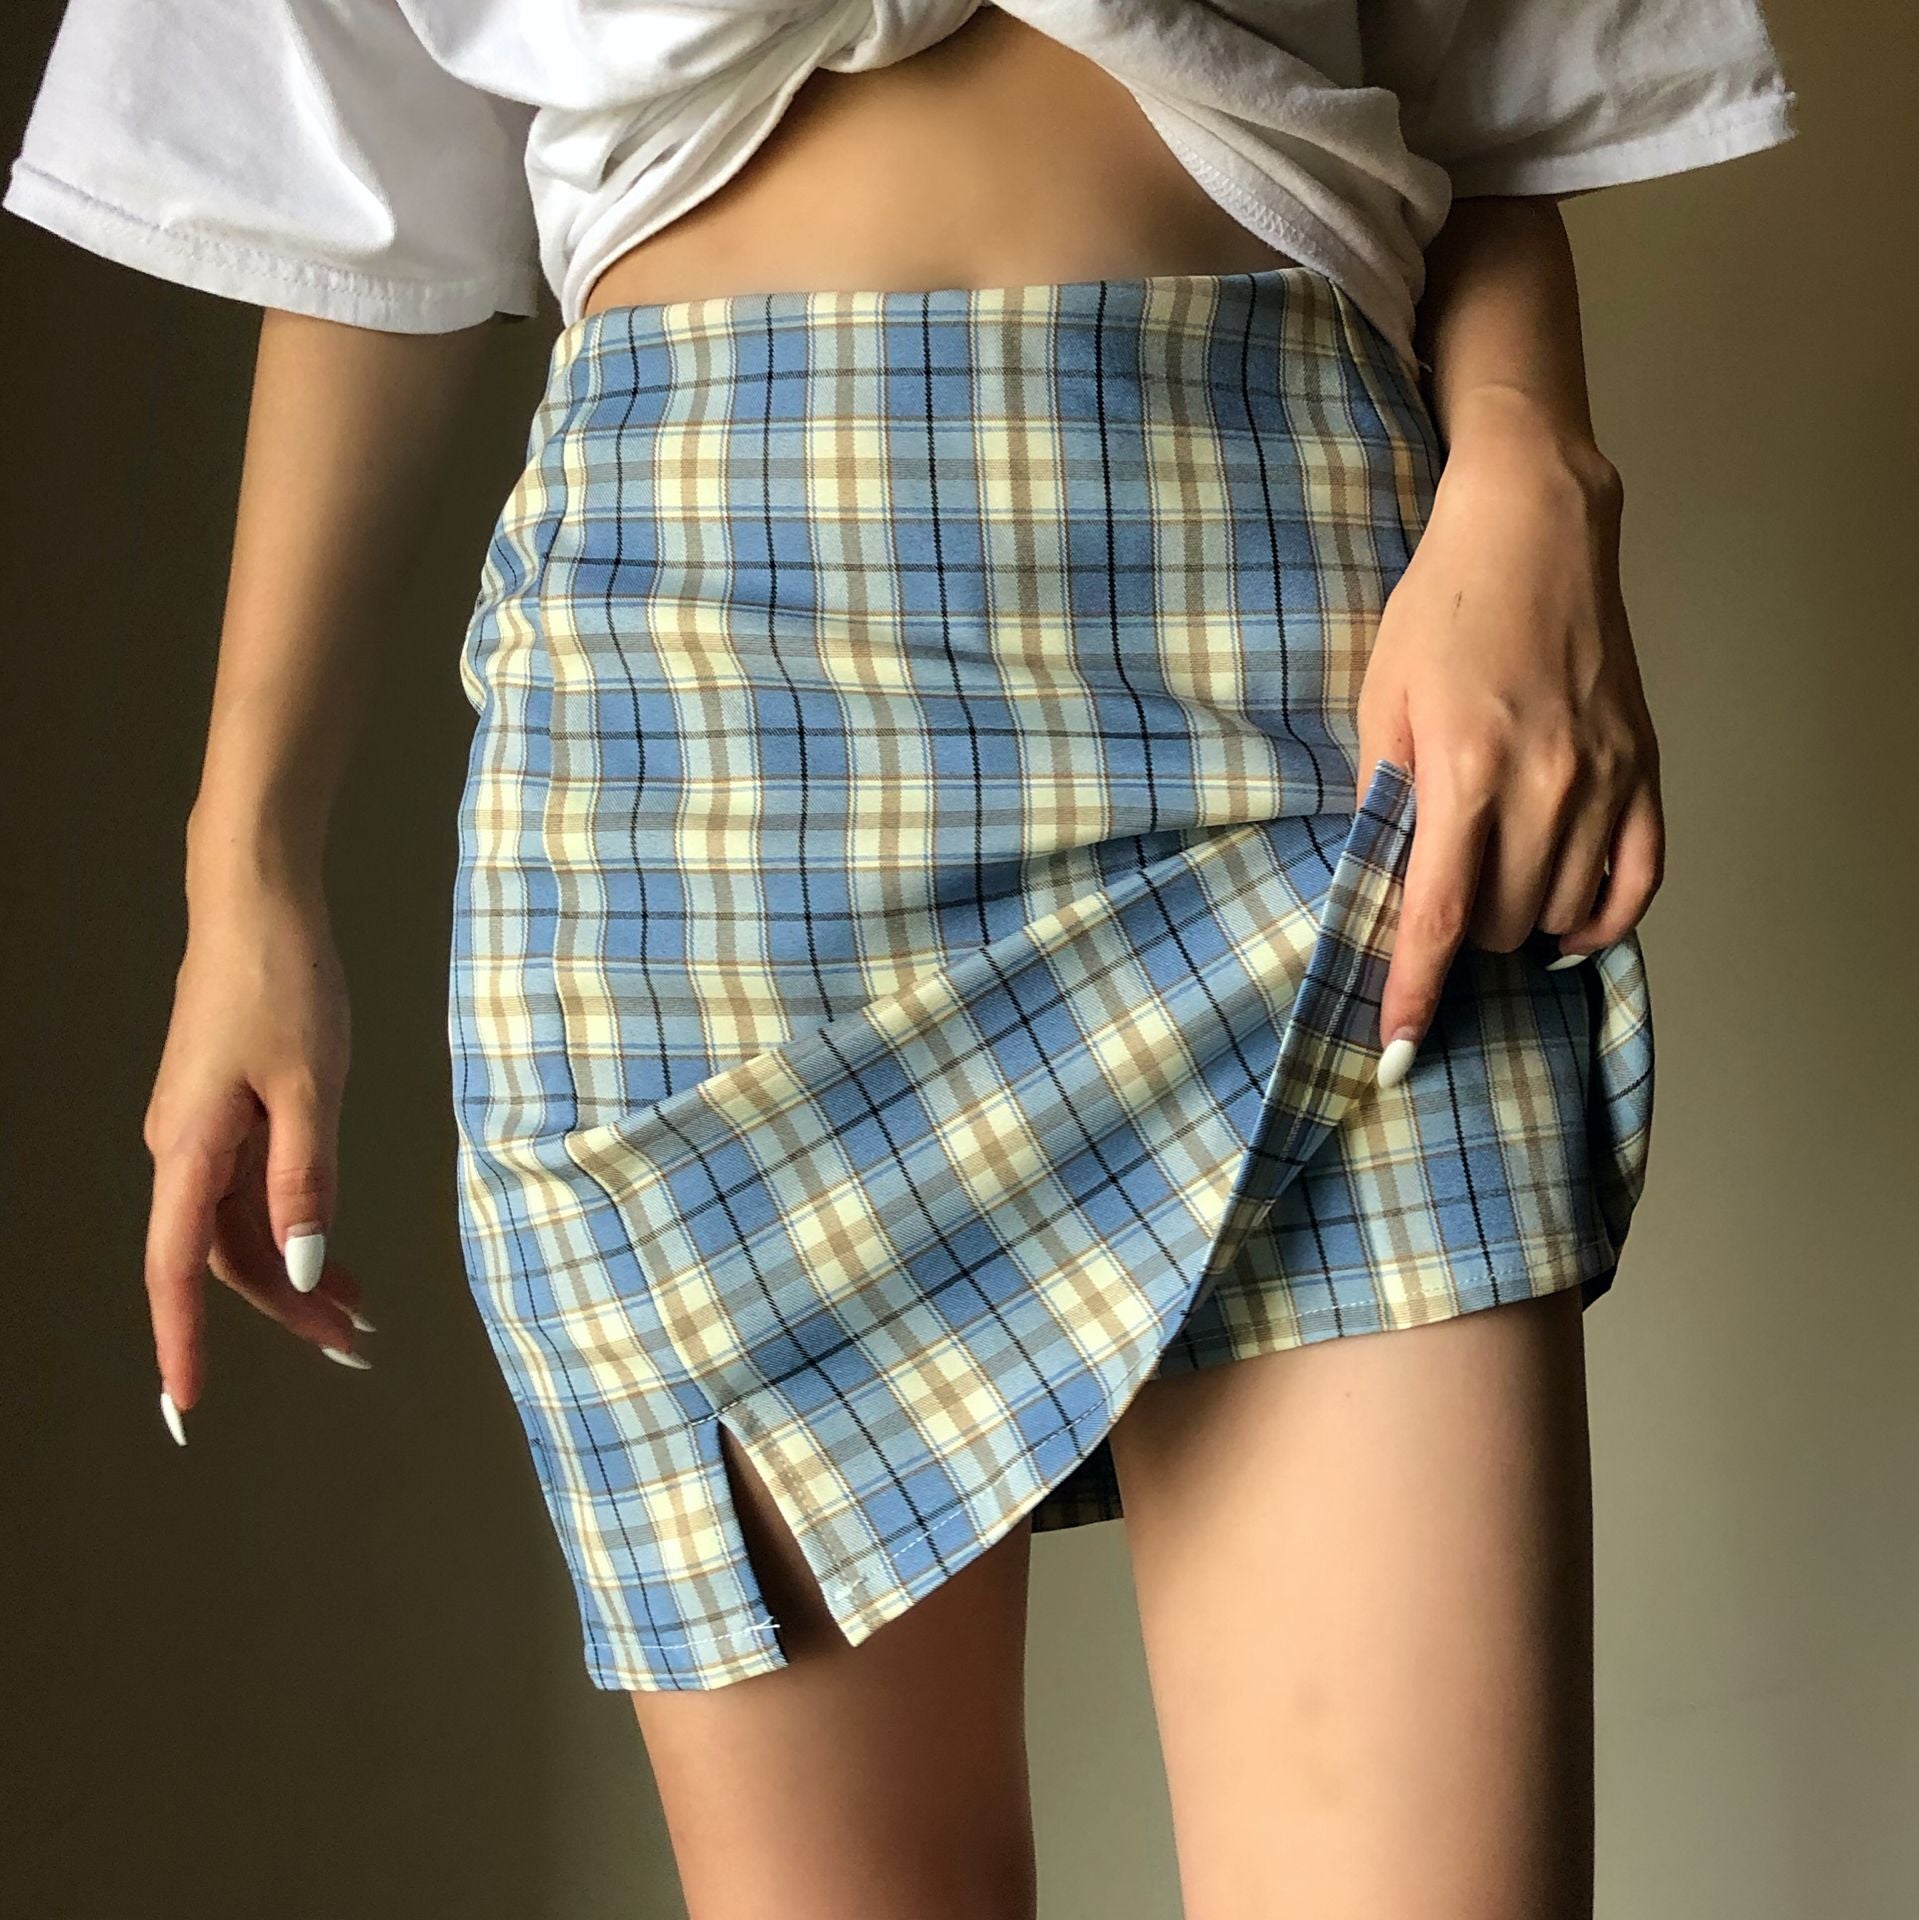 Chic plaid skirt KF9503